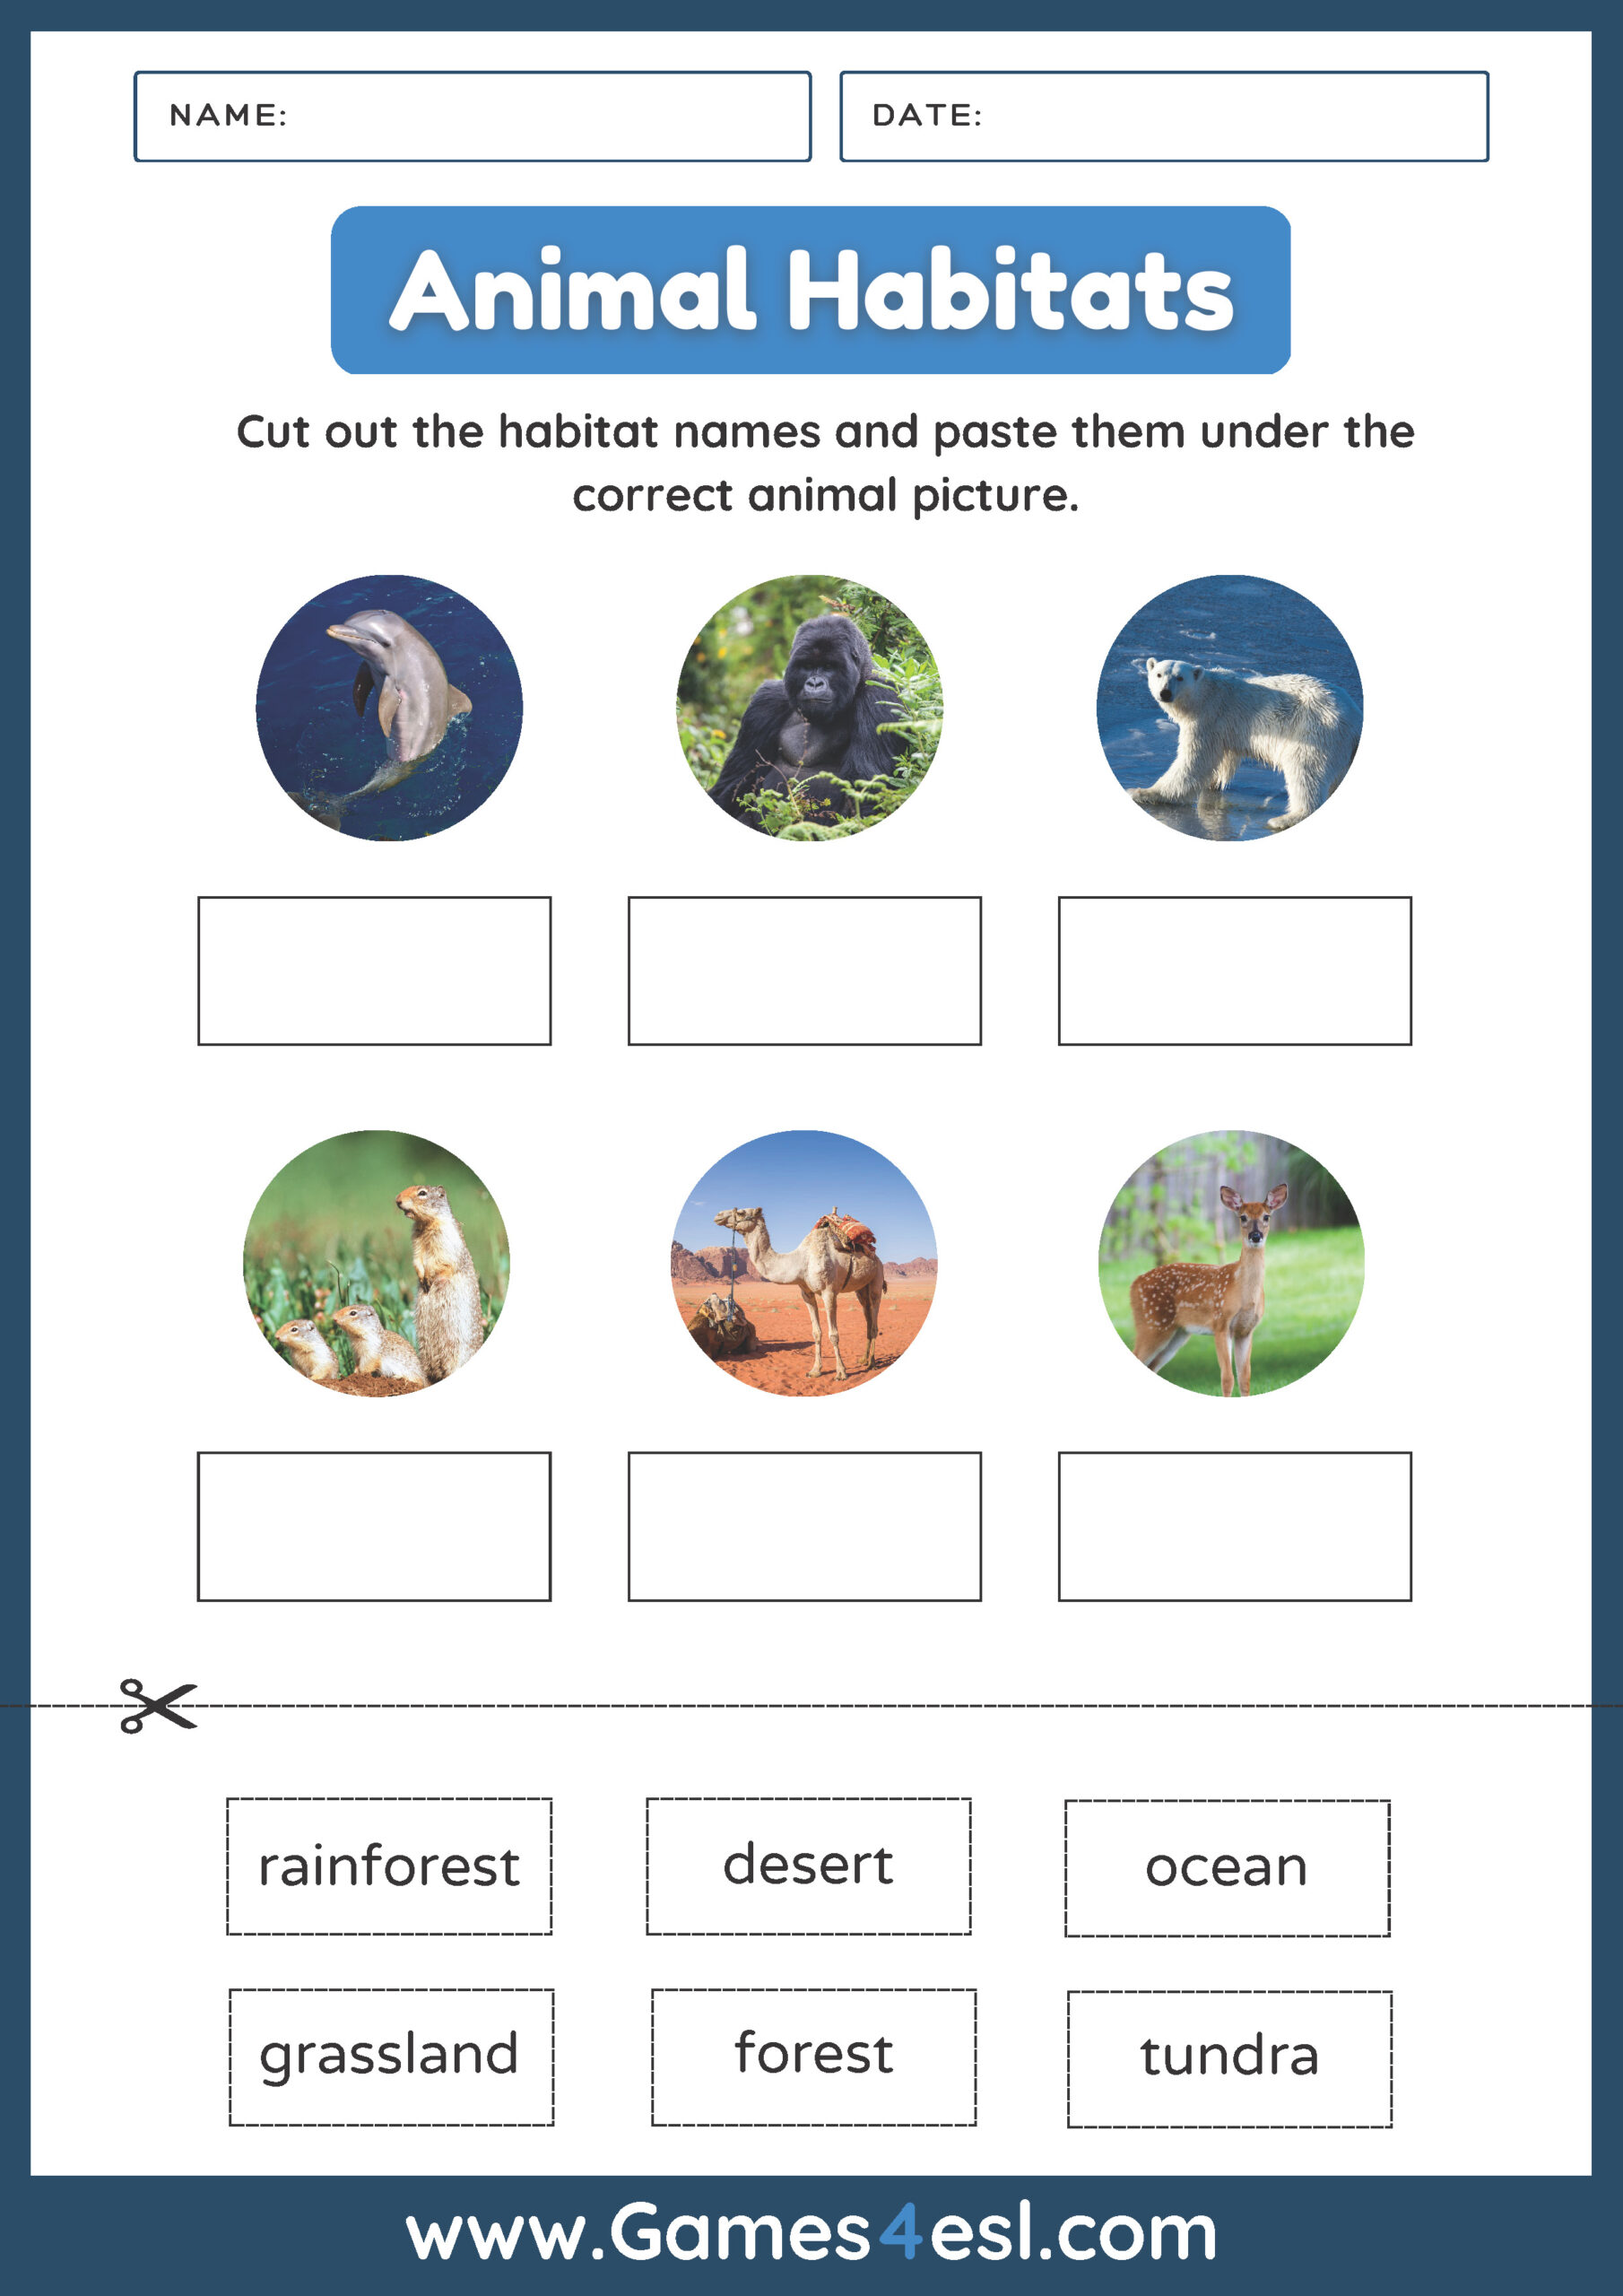 Animal Habitat Worksheet - Matching